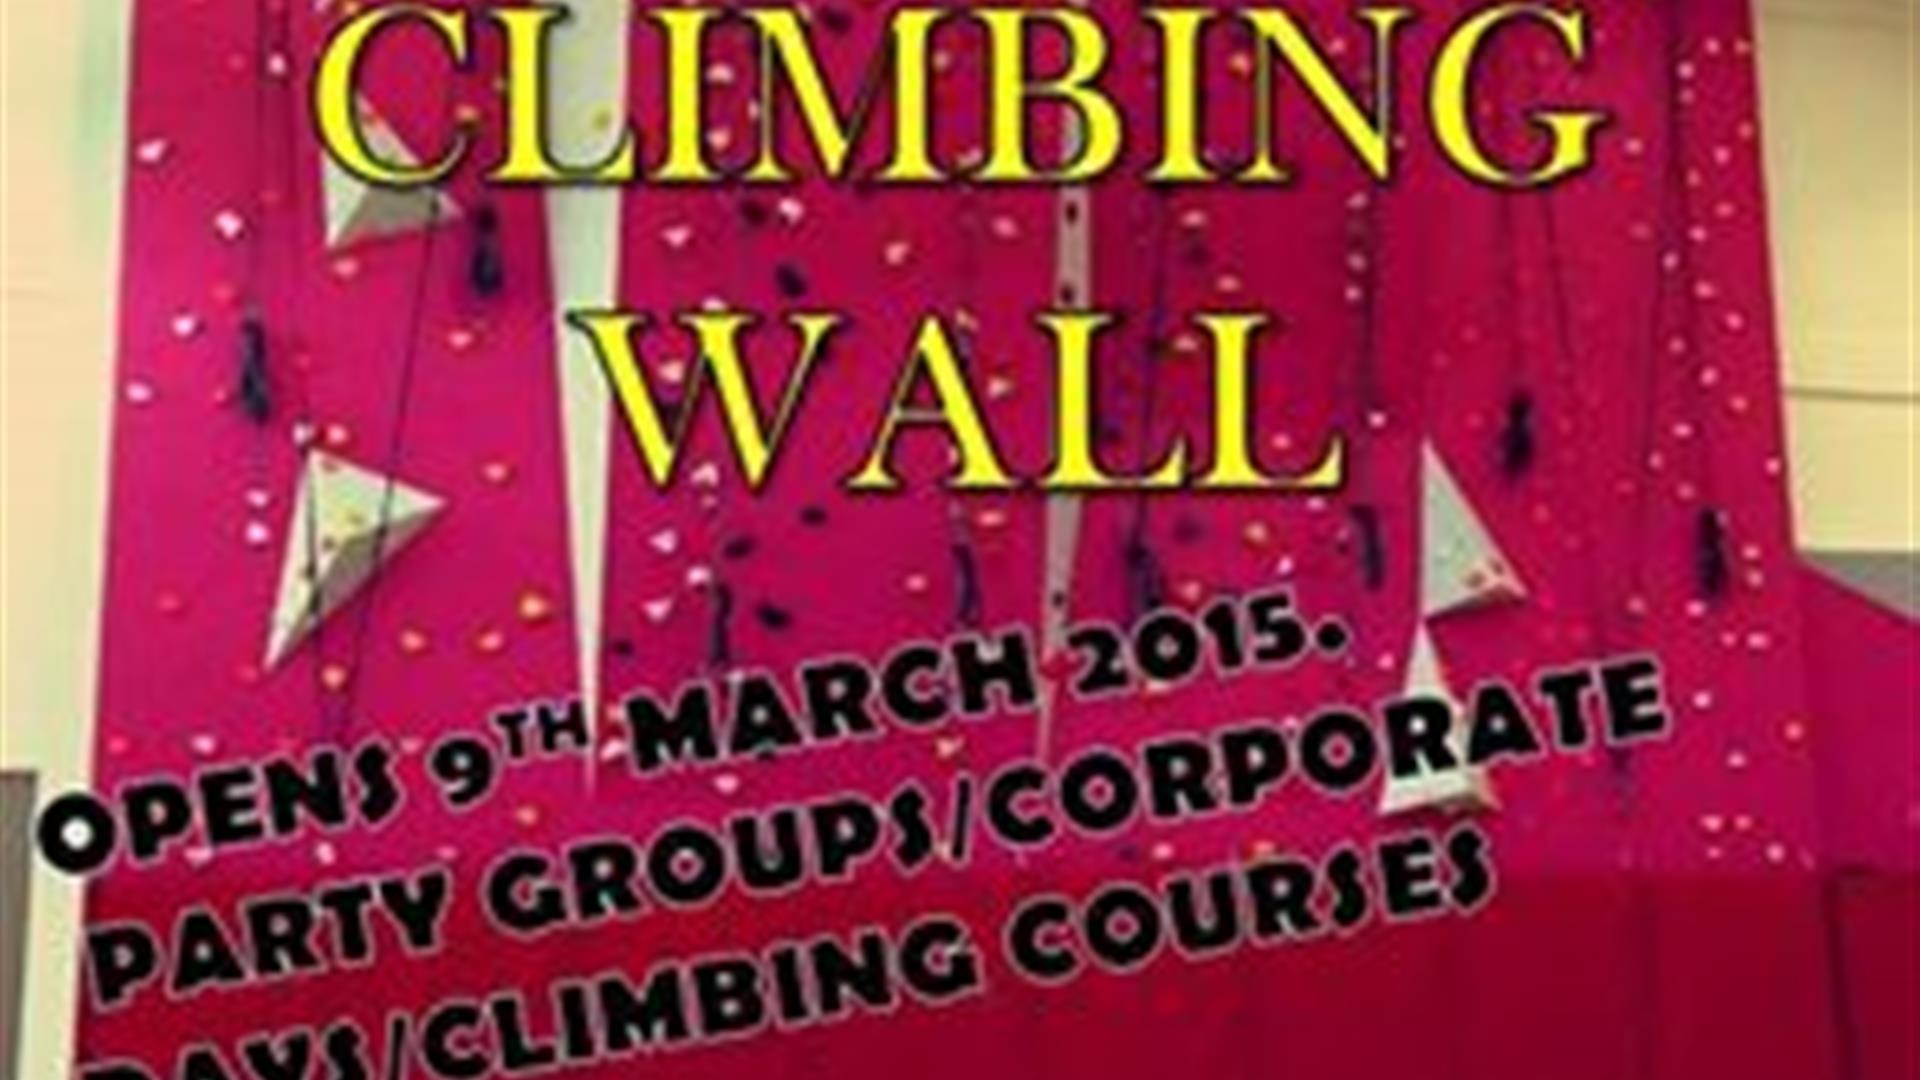 Gilford Climbing Wall